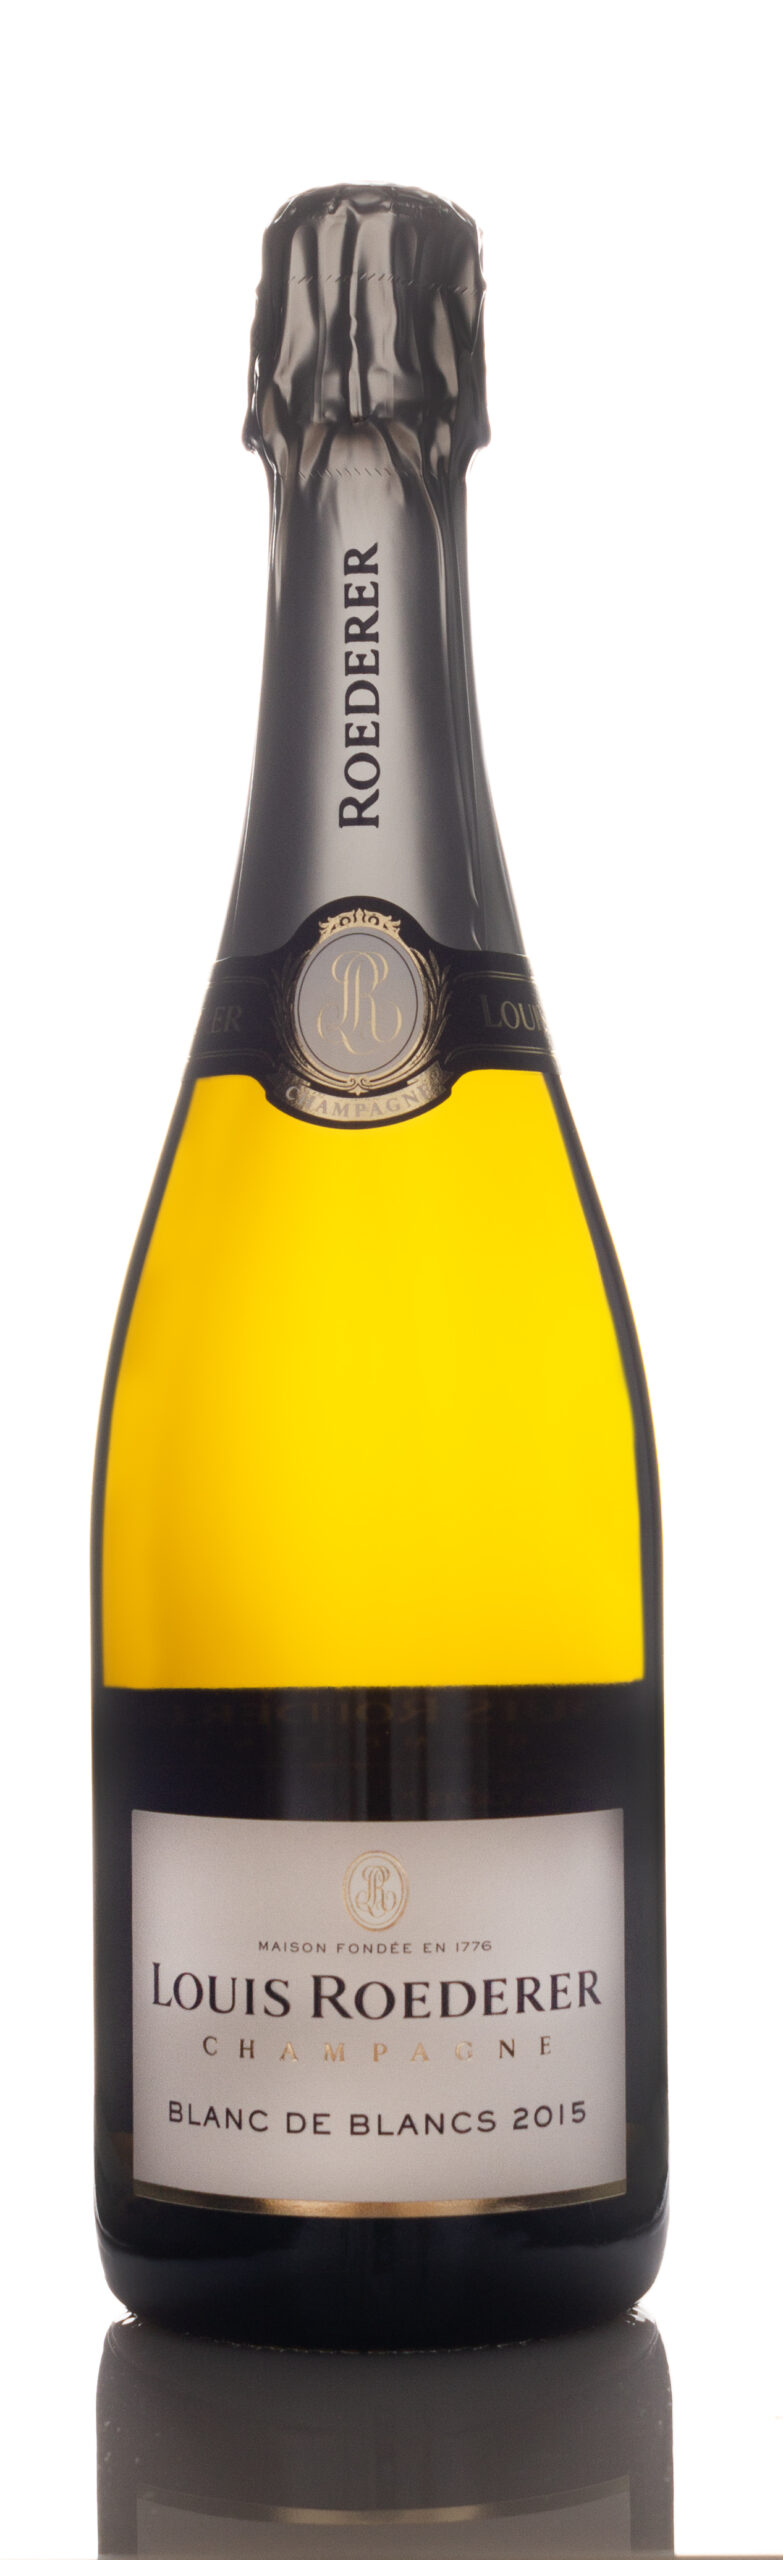 2015 Louis Roederer Blanc de Blancs Brut Millesime, Champagne